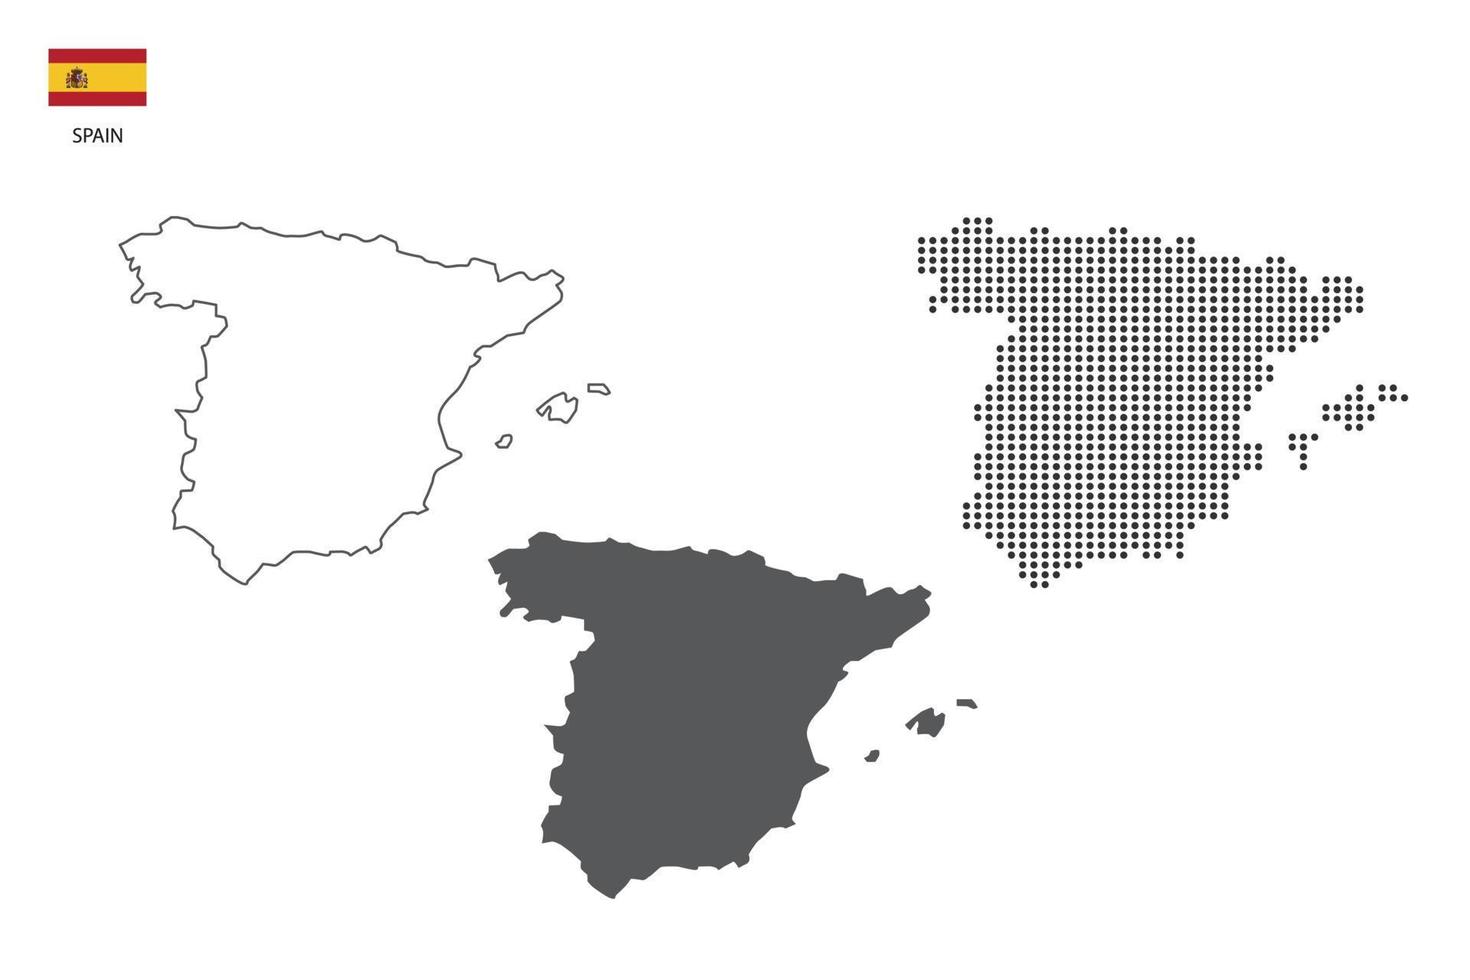 3 versões do vetor da cidade do mapa da espanha pelo estilo de simplicidade de contorno preto fino, estilo de ponto preto e estilo de sombra escura. tudo no fundo branco.